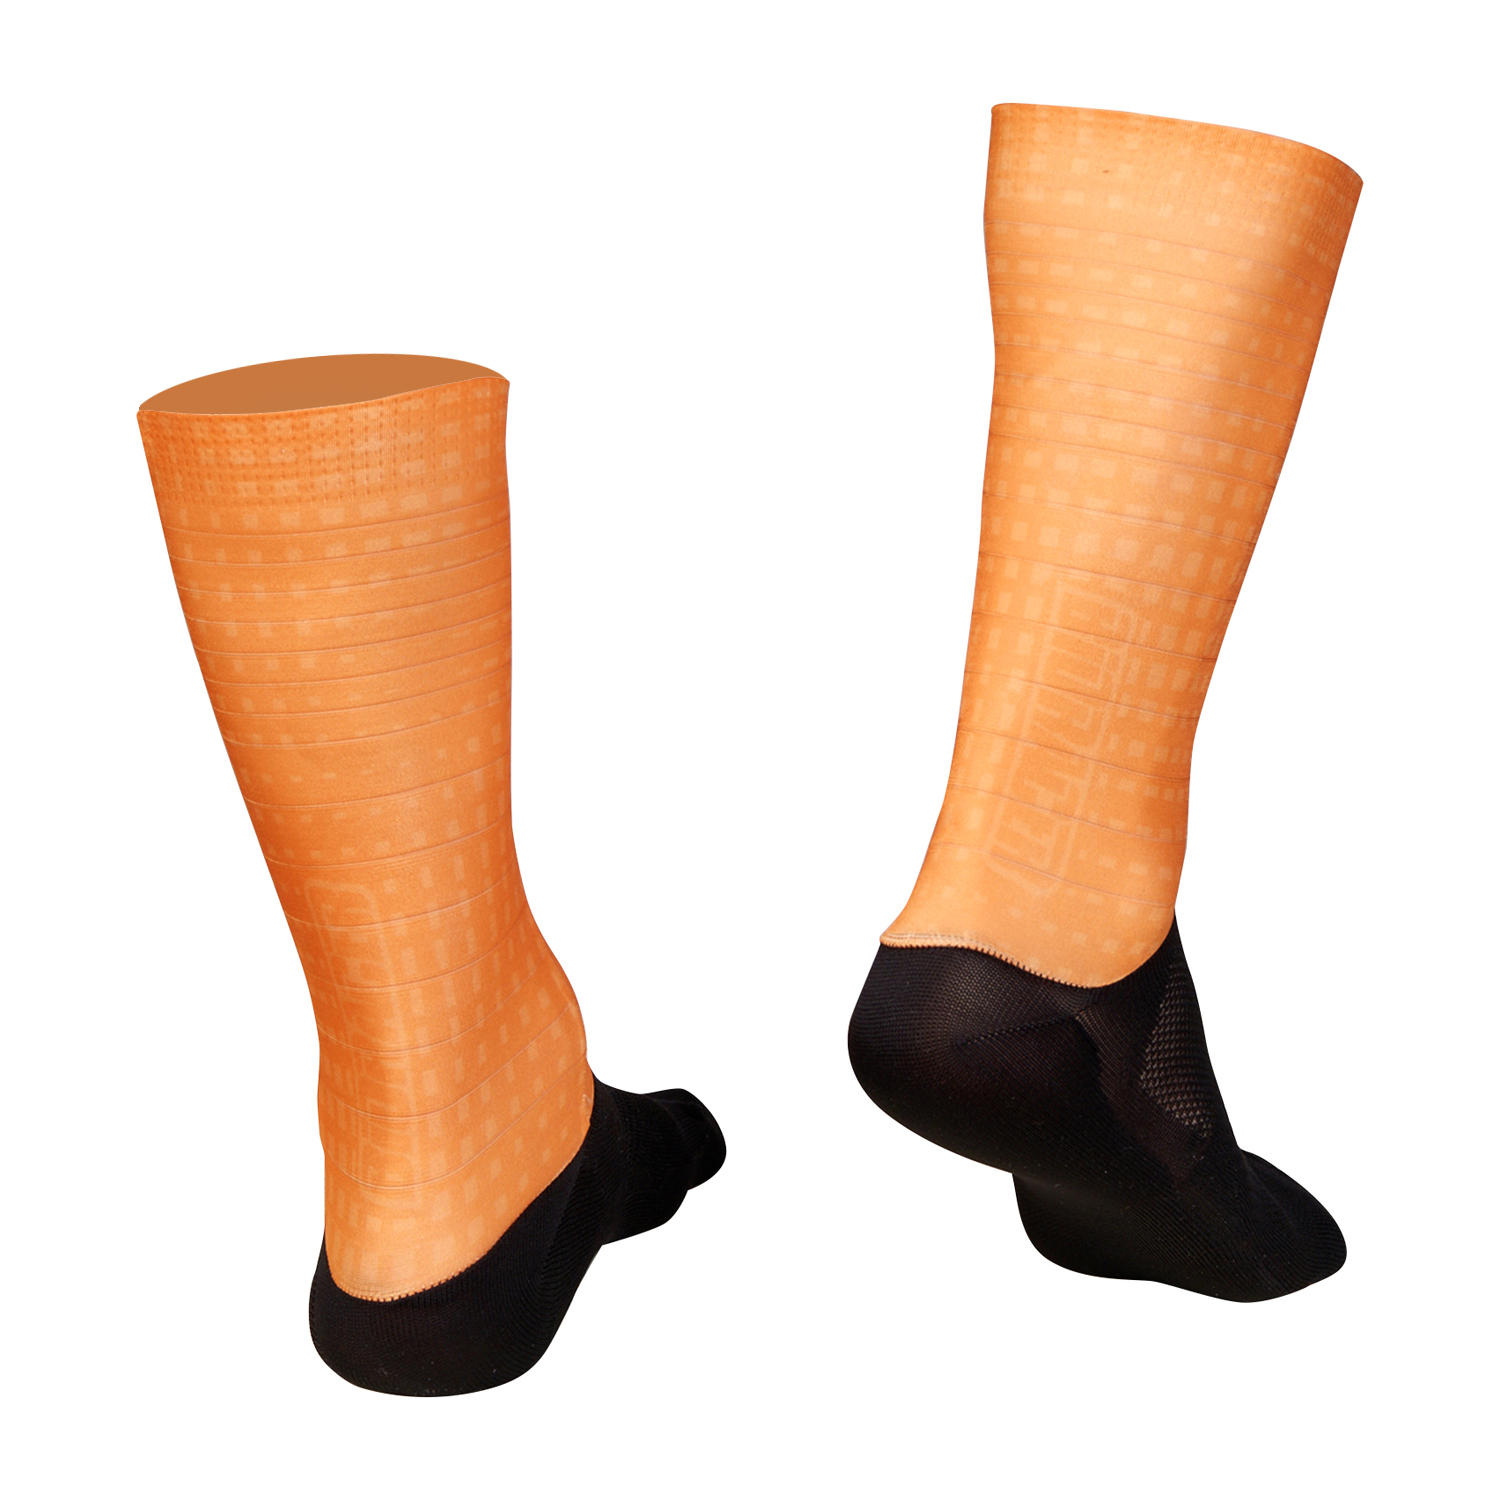 Technical Socks Op Art Orange